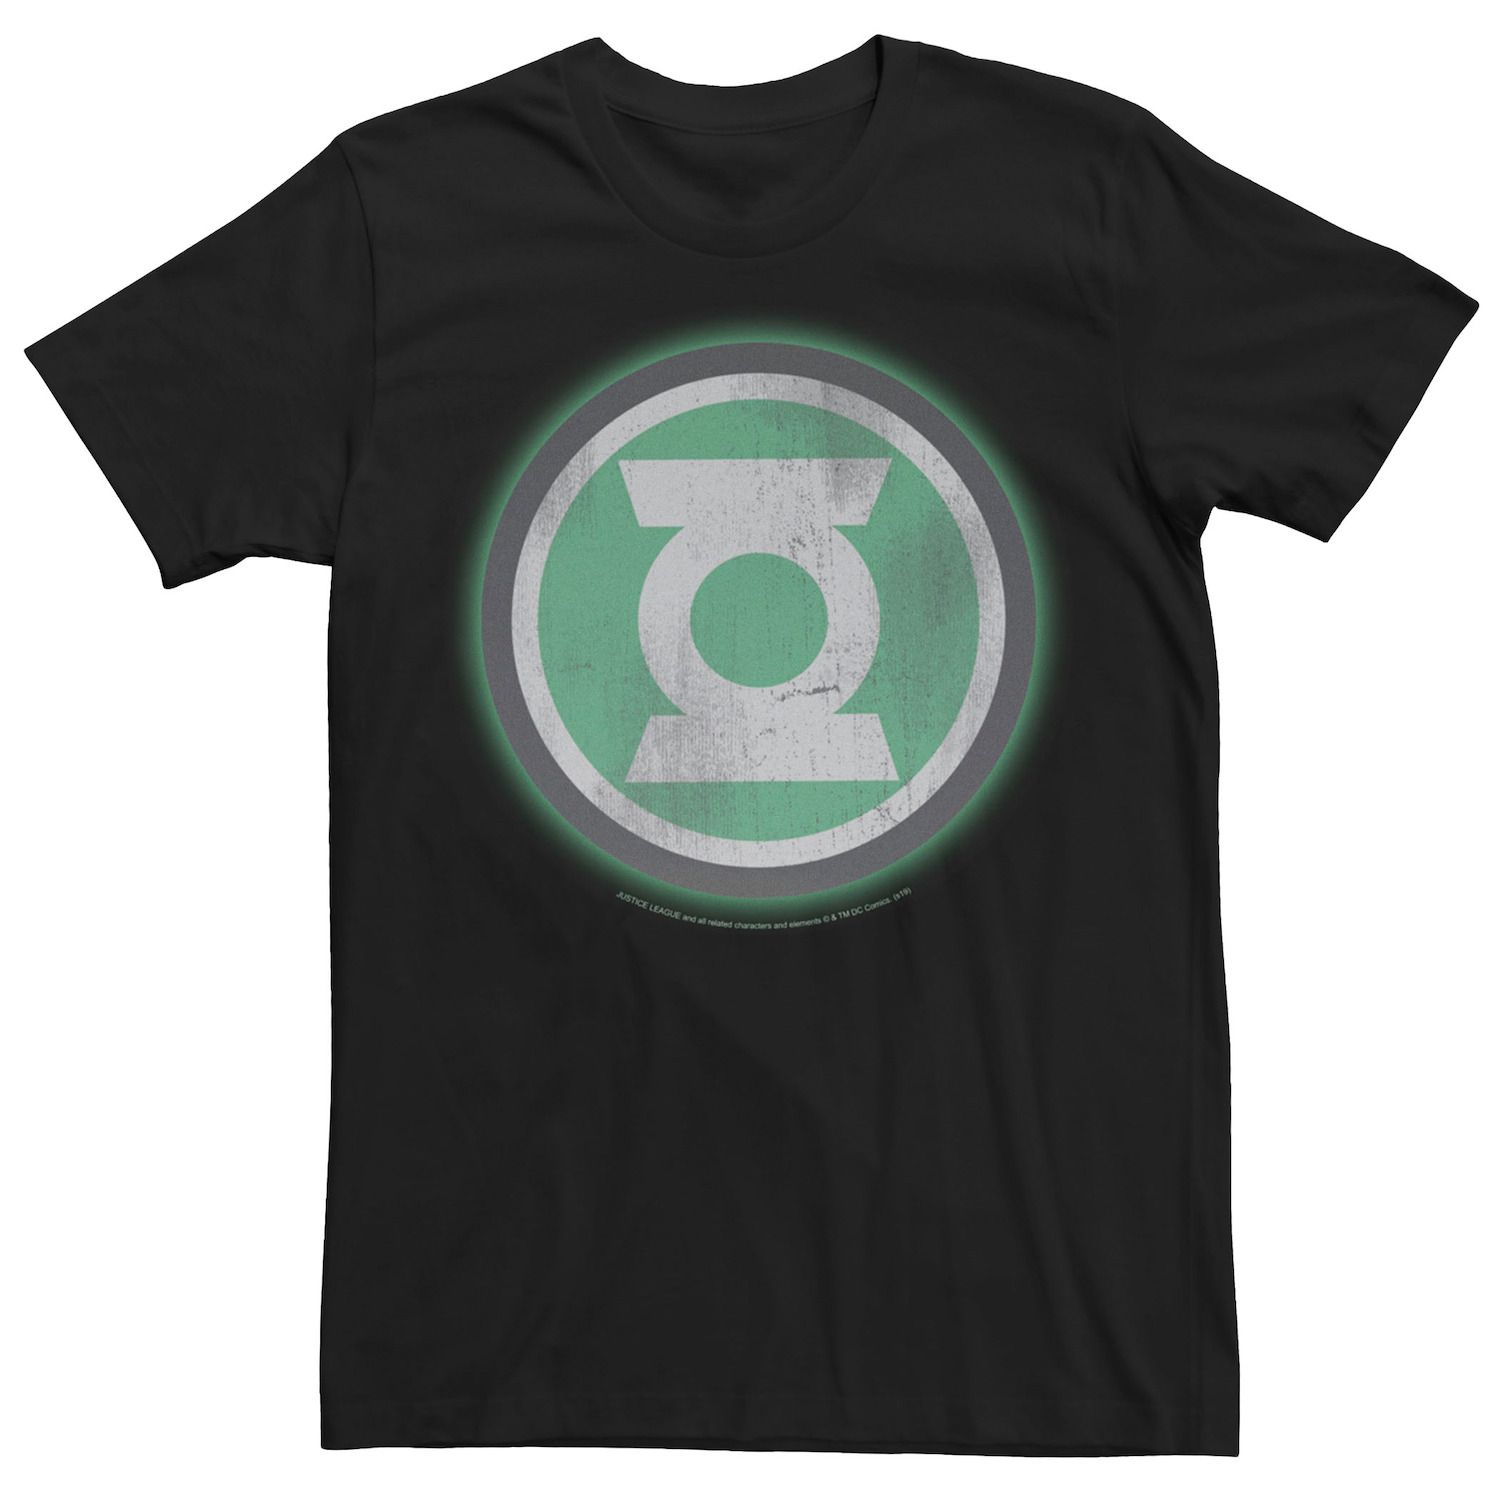 Мужская футболка с оригинальным логотипом Green Lantern и потертостями Licensed Character